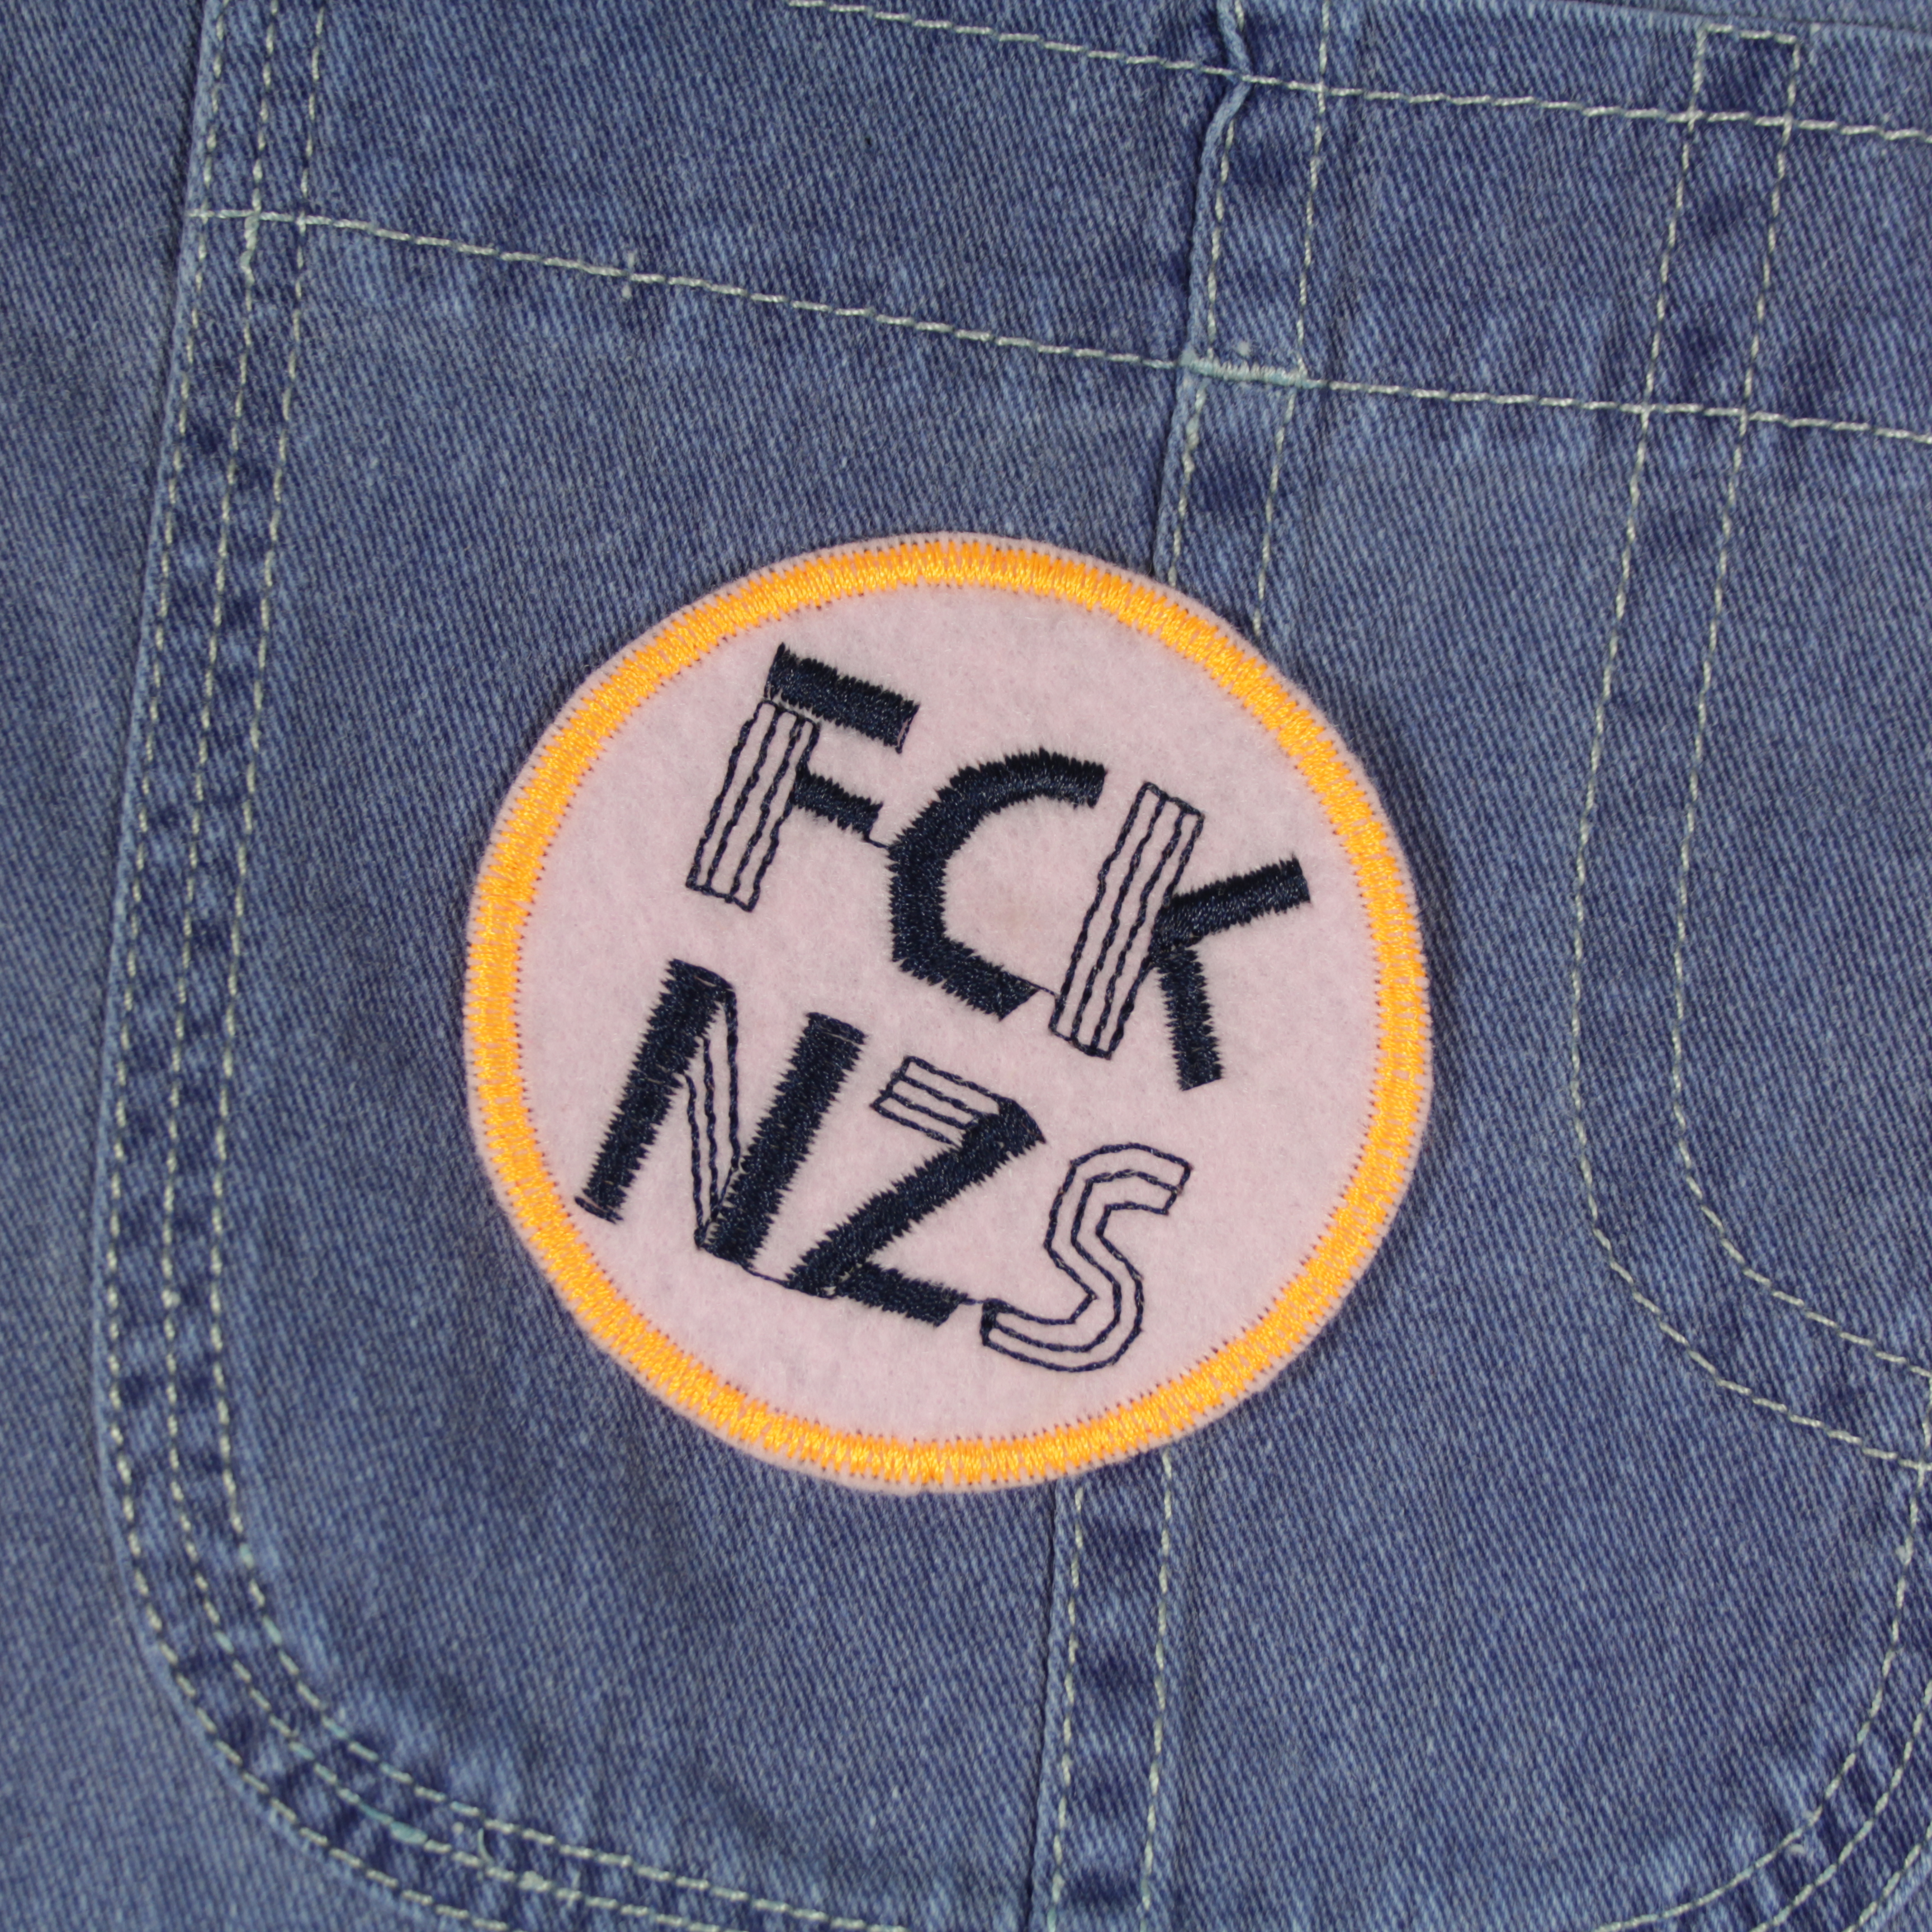 Patch FCK NZS auf Jeans Tasche blau